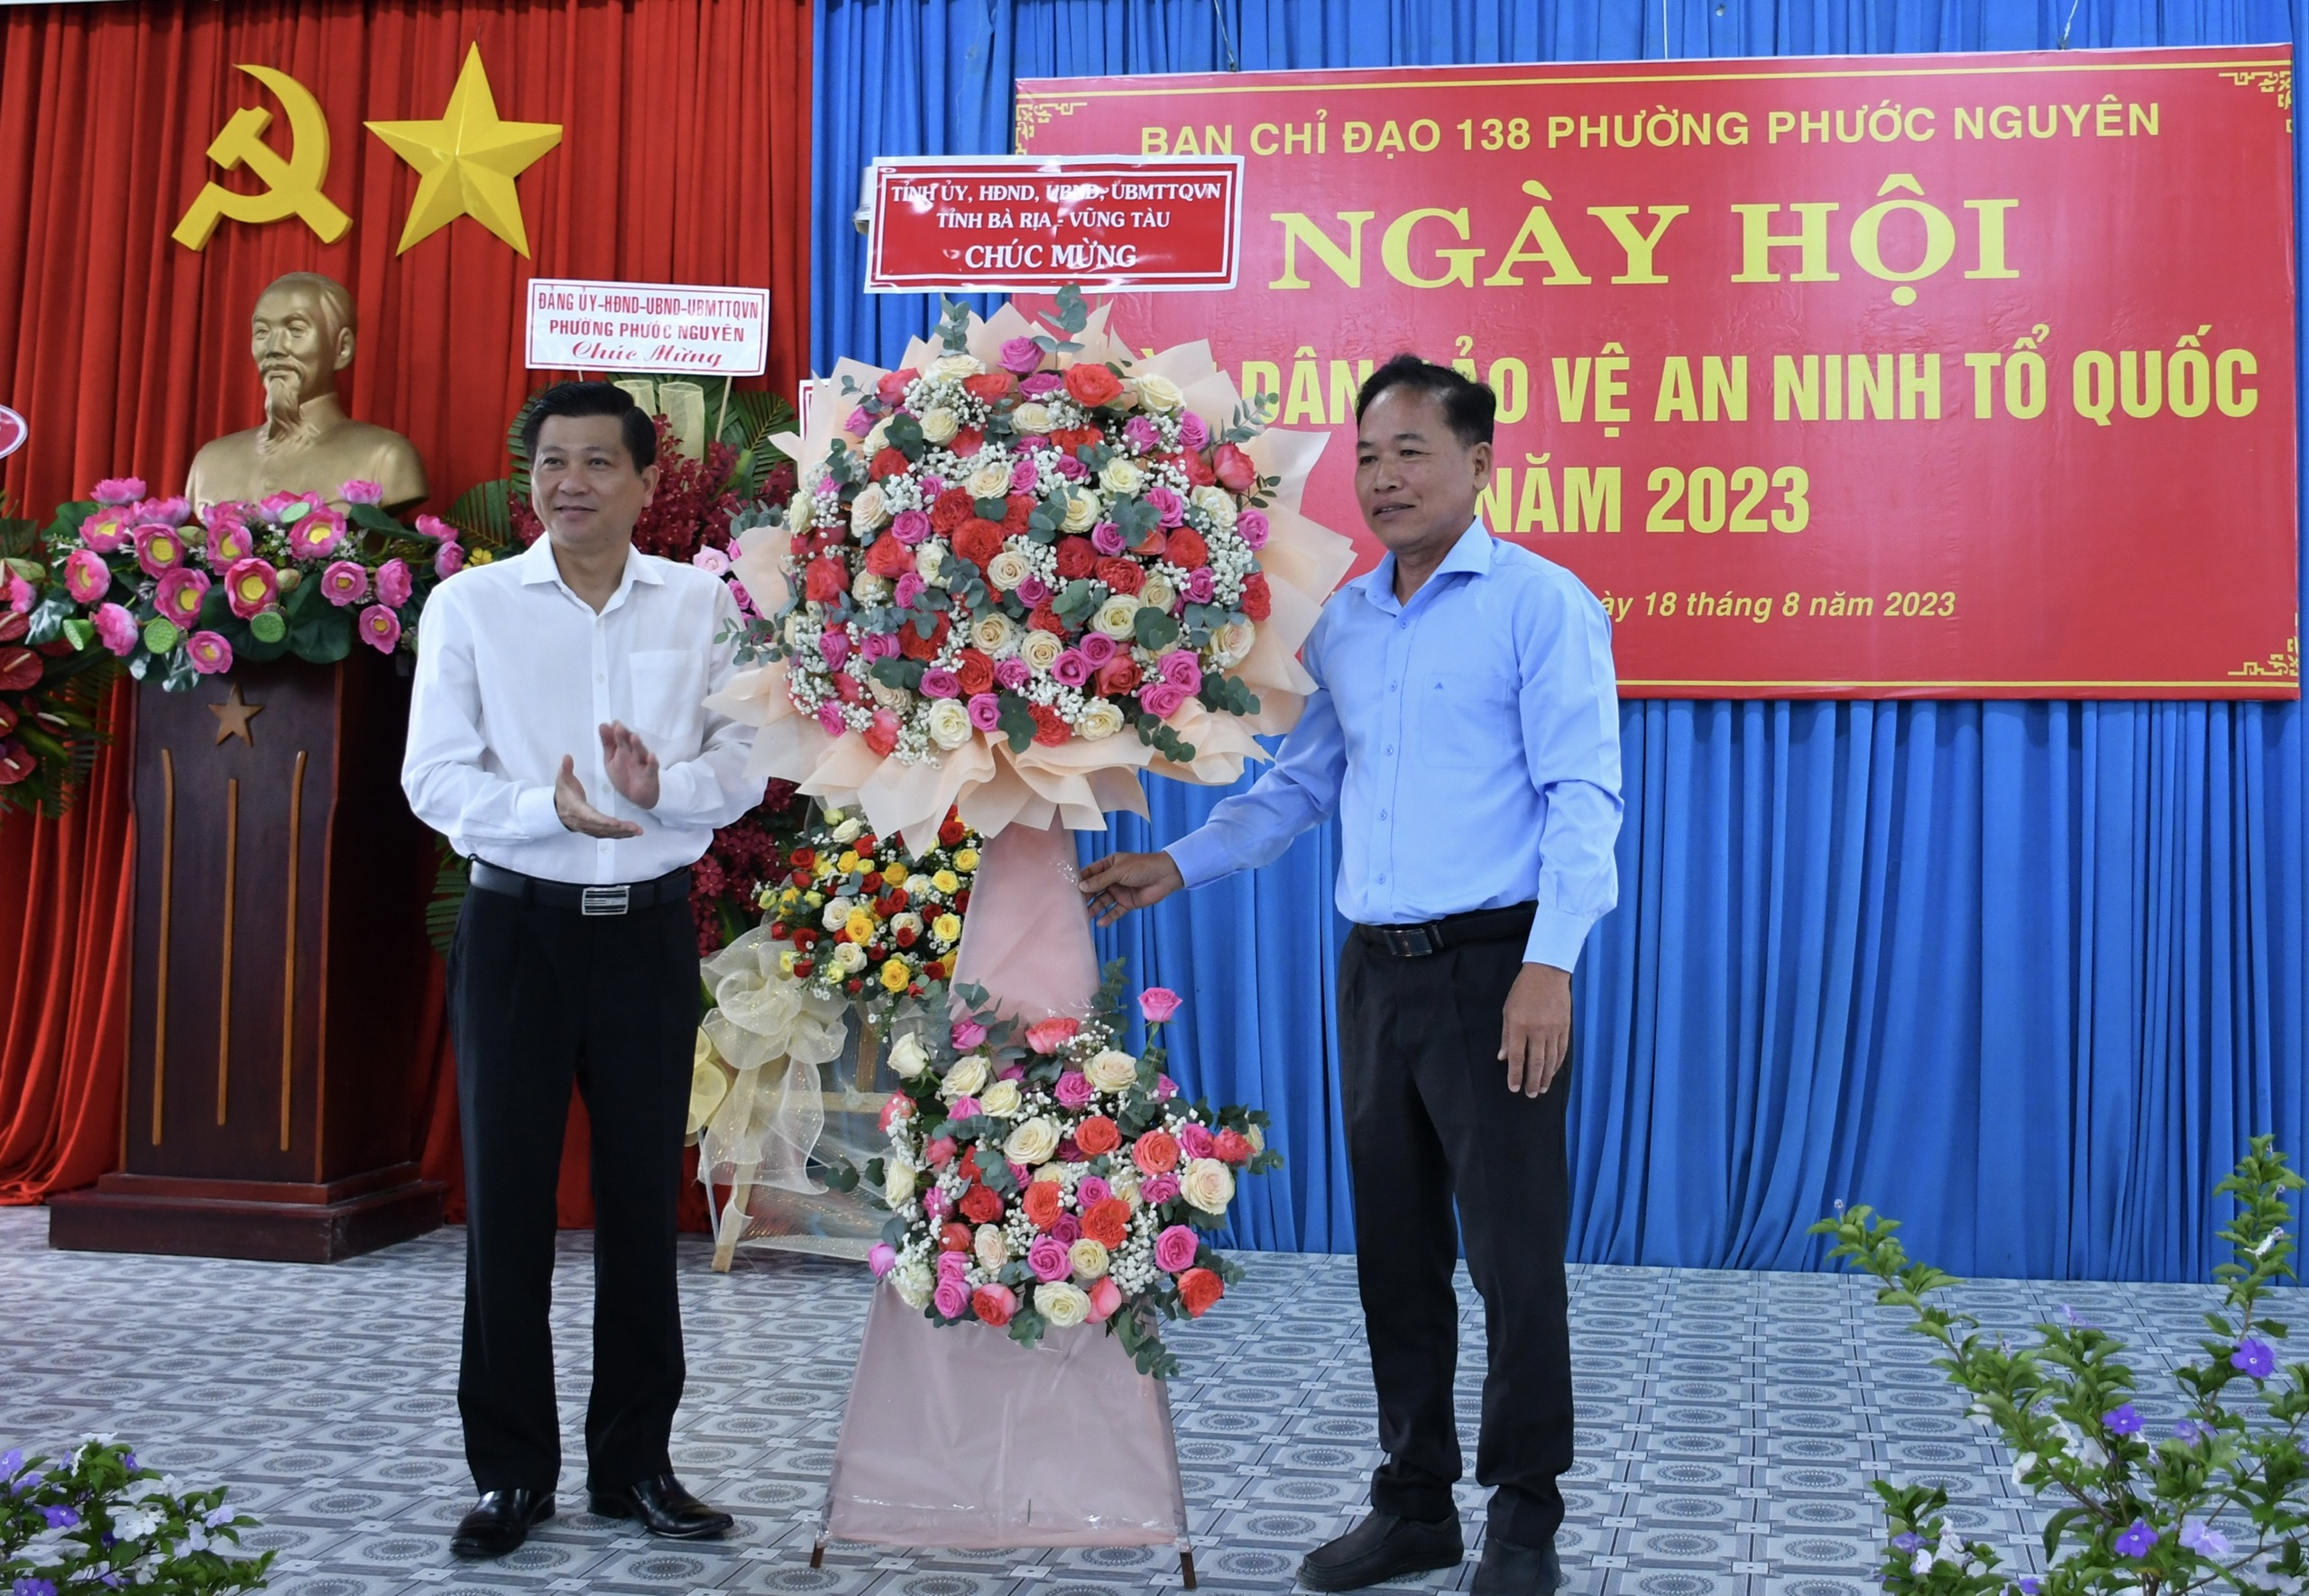 Ông Trần Văn Tuấn, Bí thư Thành ủy Bà Rịa (bên trái) trao hoa chúc mừng Ngày hội 